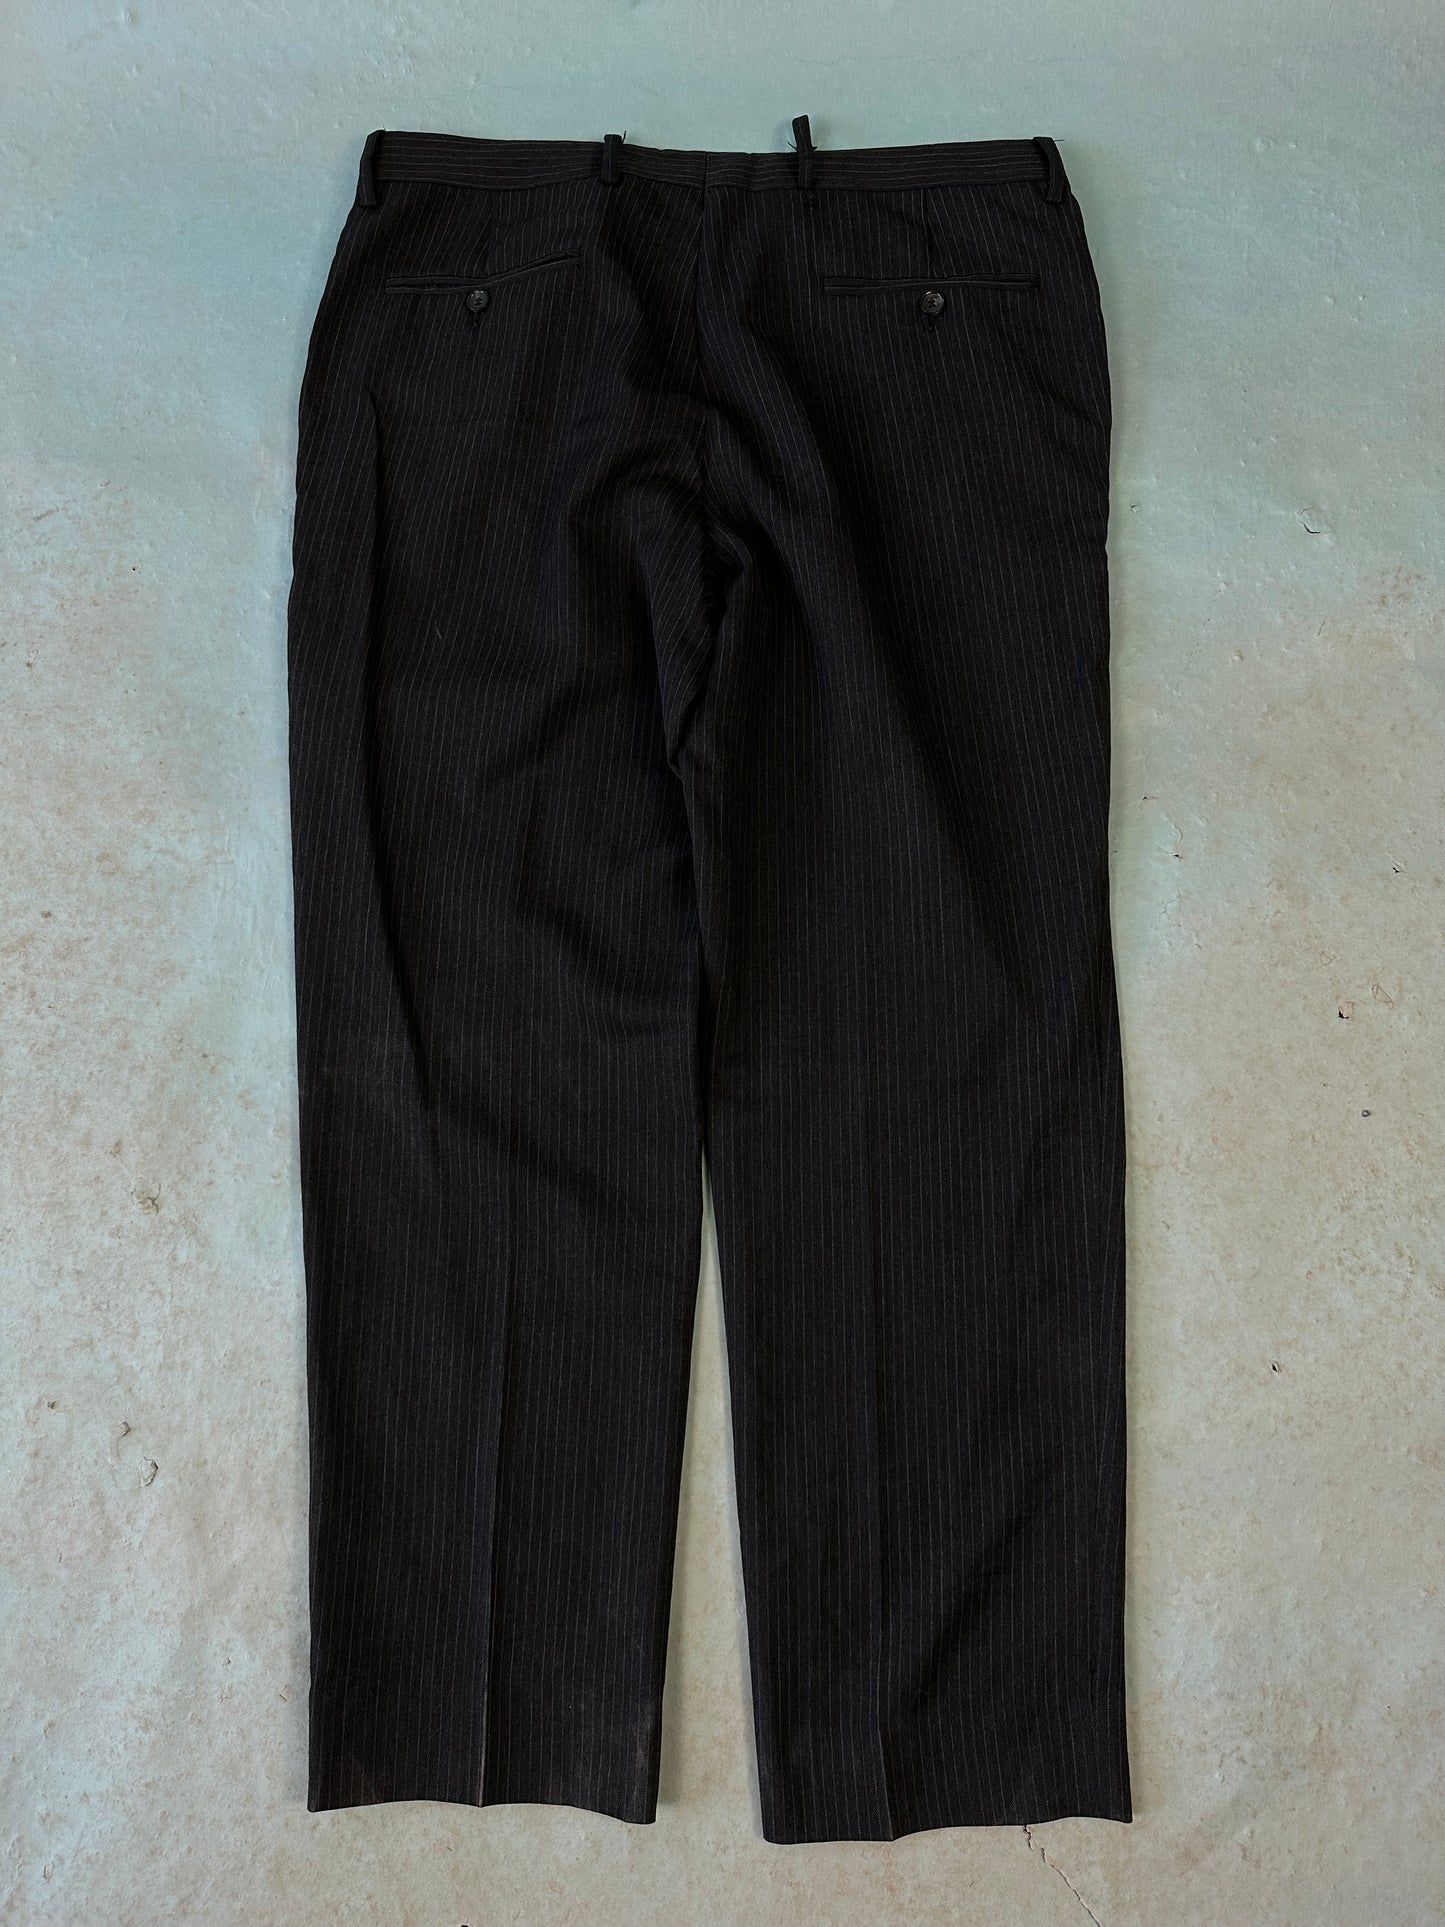 Dolce & Gabbana Pin Stripe Pants - 38